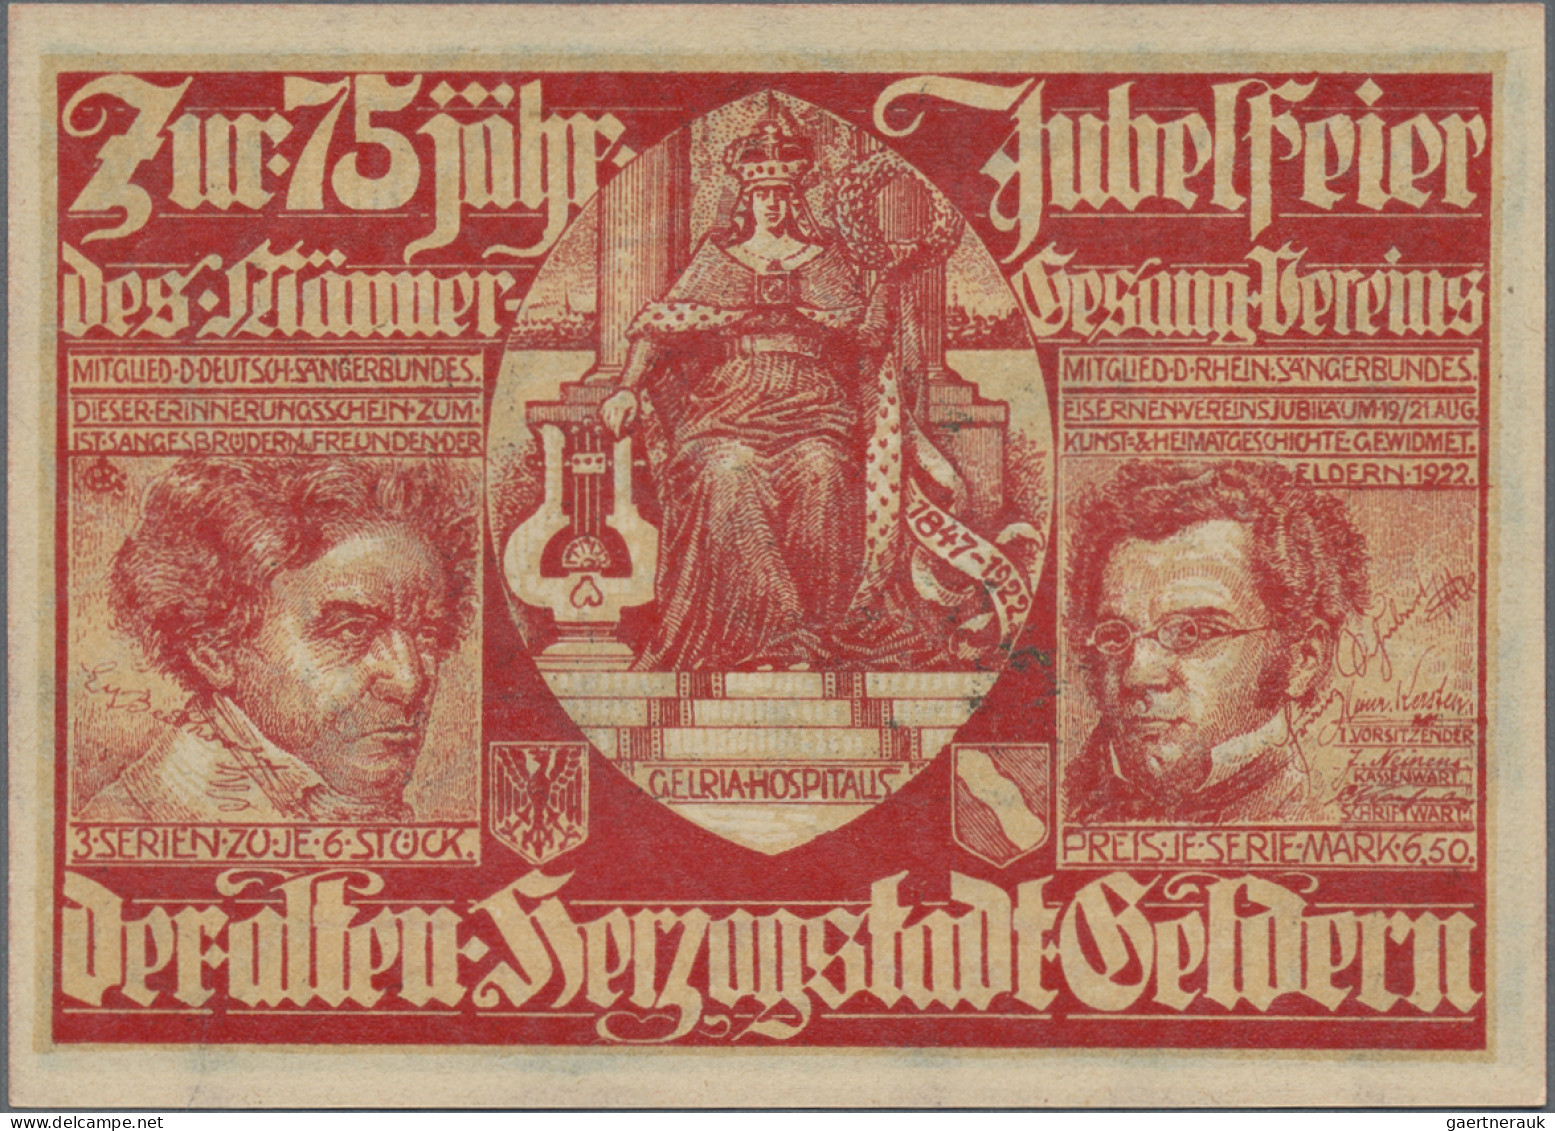 Deutschland - Notgeld - Rheinland: Geldern, Männergesangverein, 23 x 75 Pf., 19.